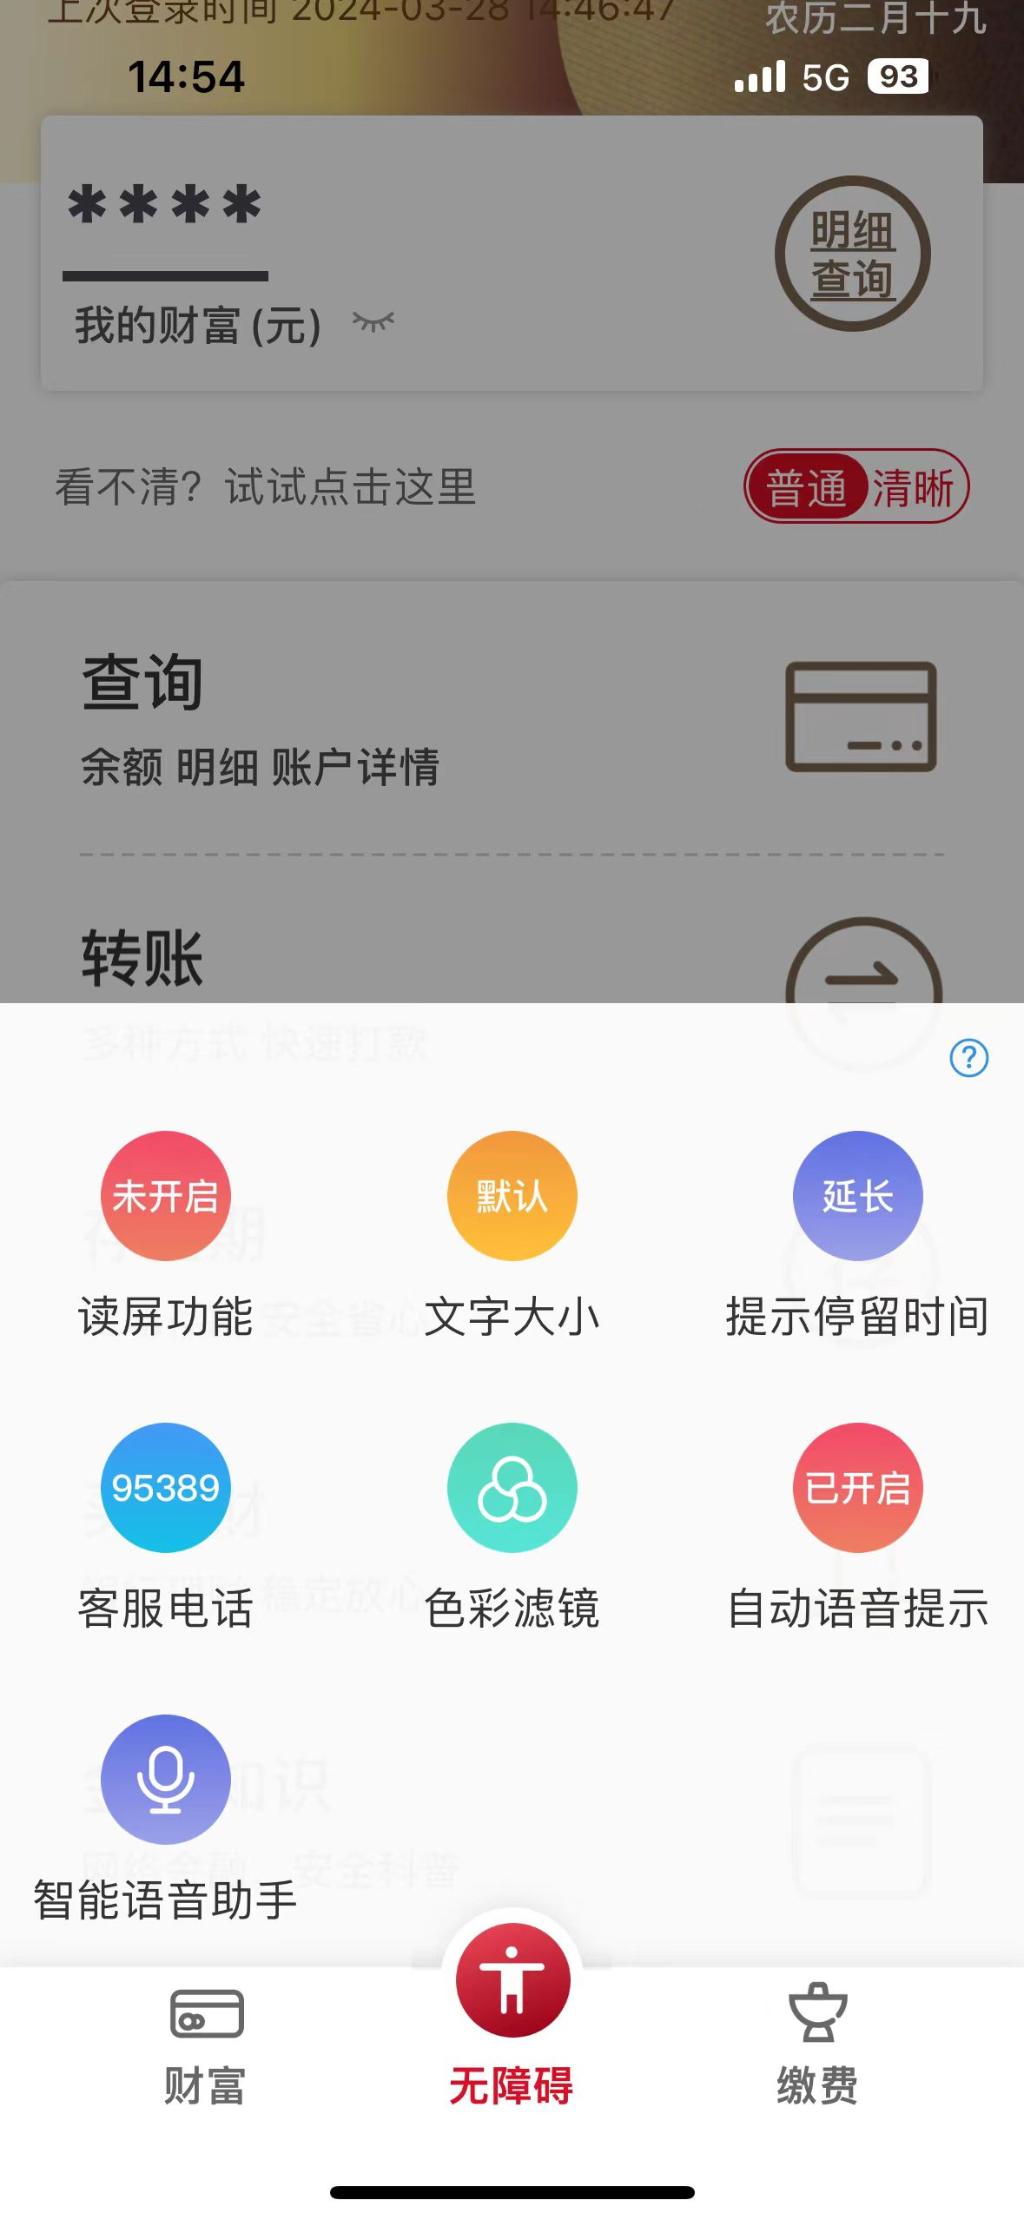 （图3）图为重庆农商行为老年客户定制的“关爱版”手机银行特色界面及功能